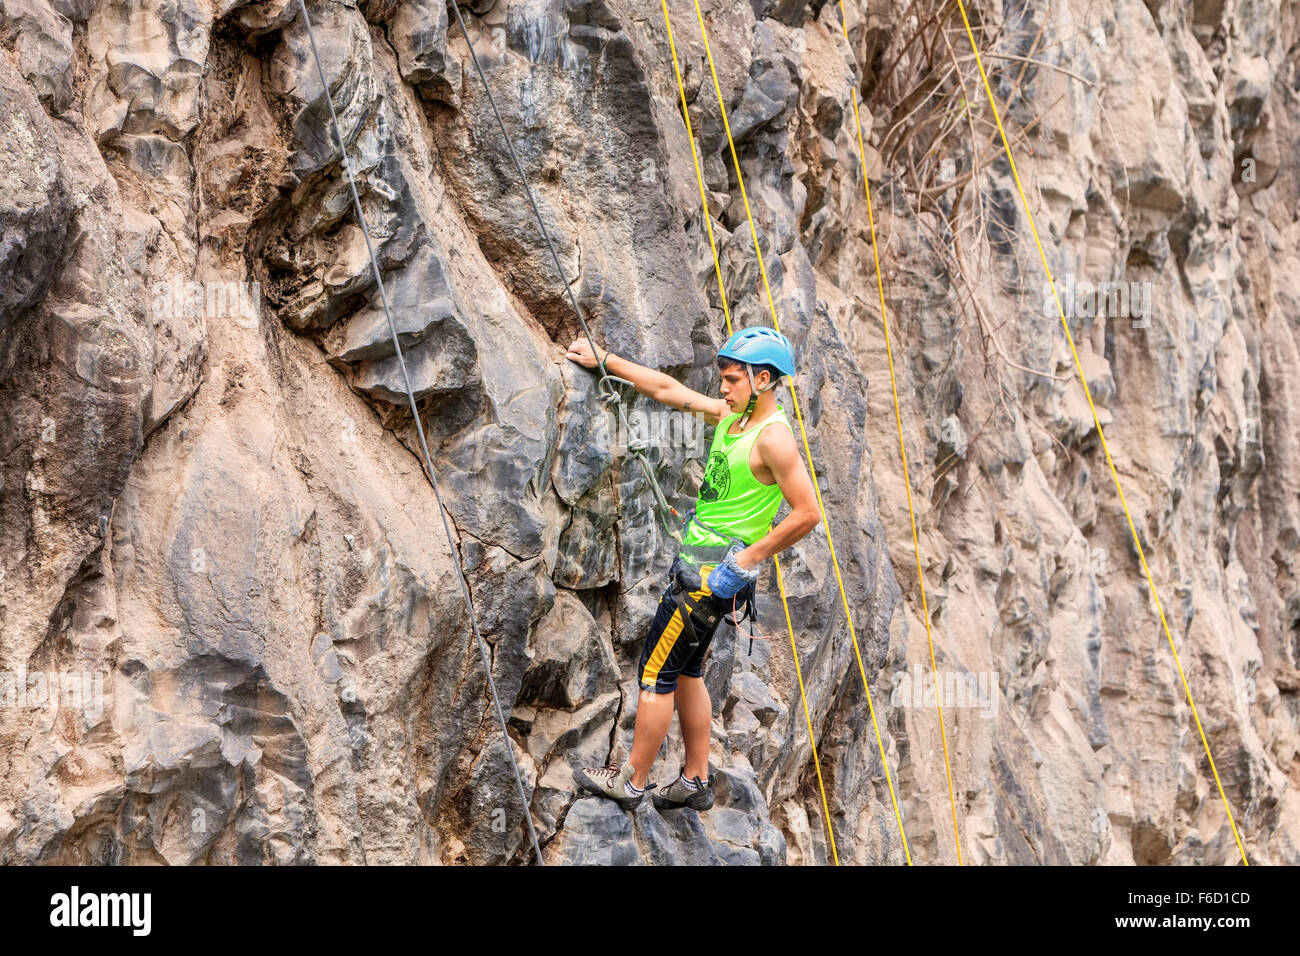 Banos, Ecuador - 30 November 2014: Basalt Challenge Of Tungurahua, Young Hispanic Man Climbing Vertical Rock Wall In Banos Stock Photo